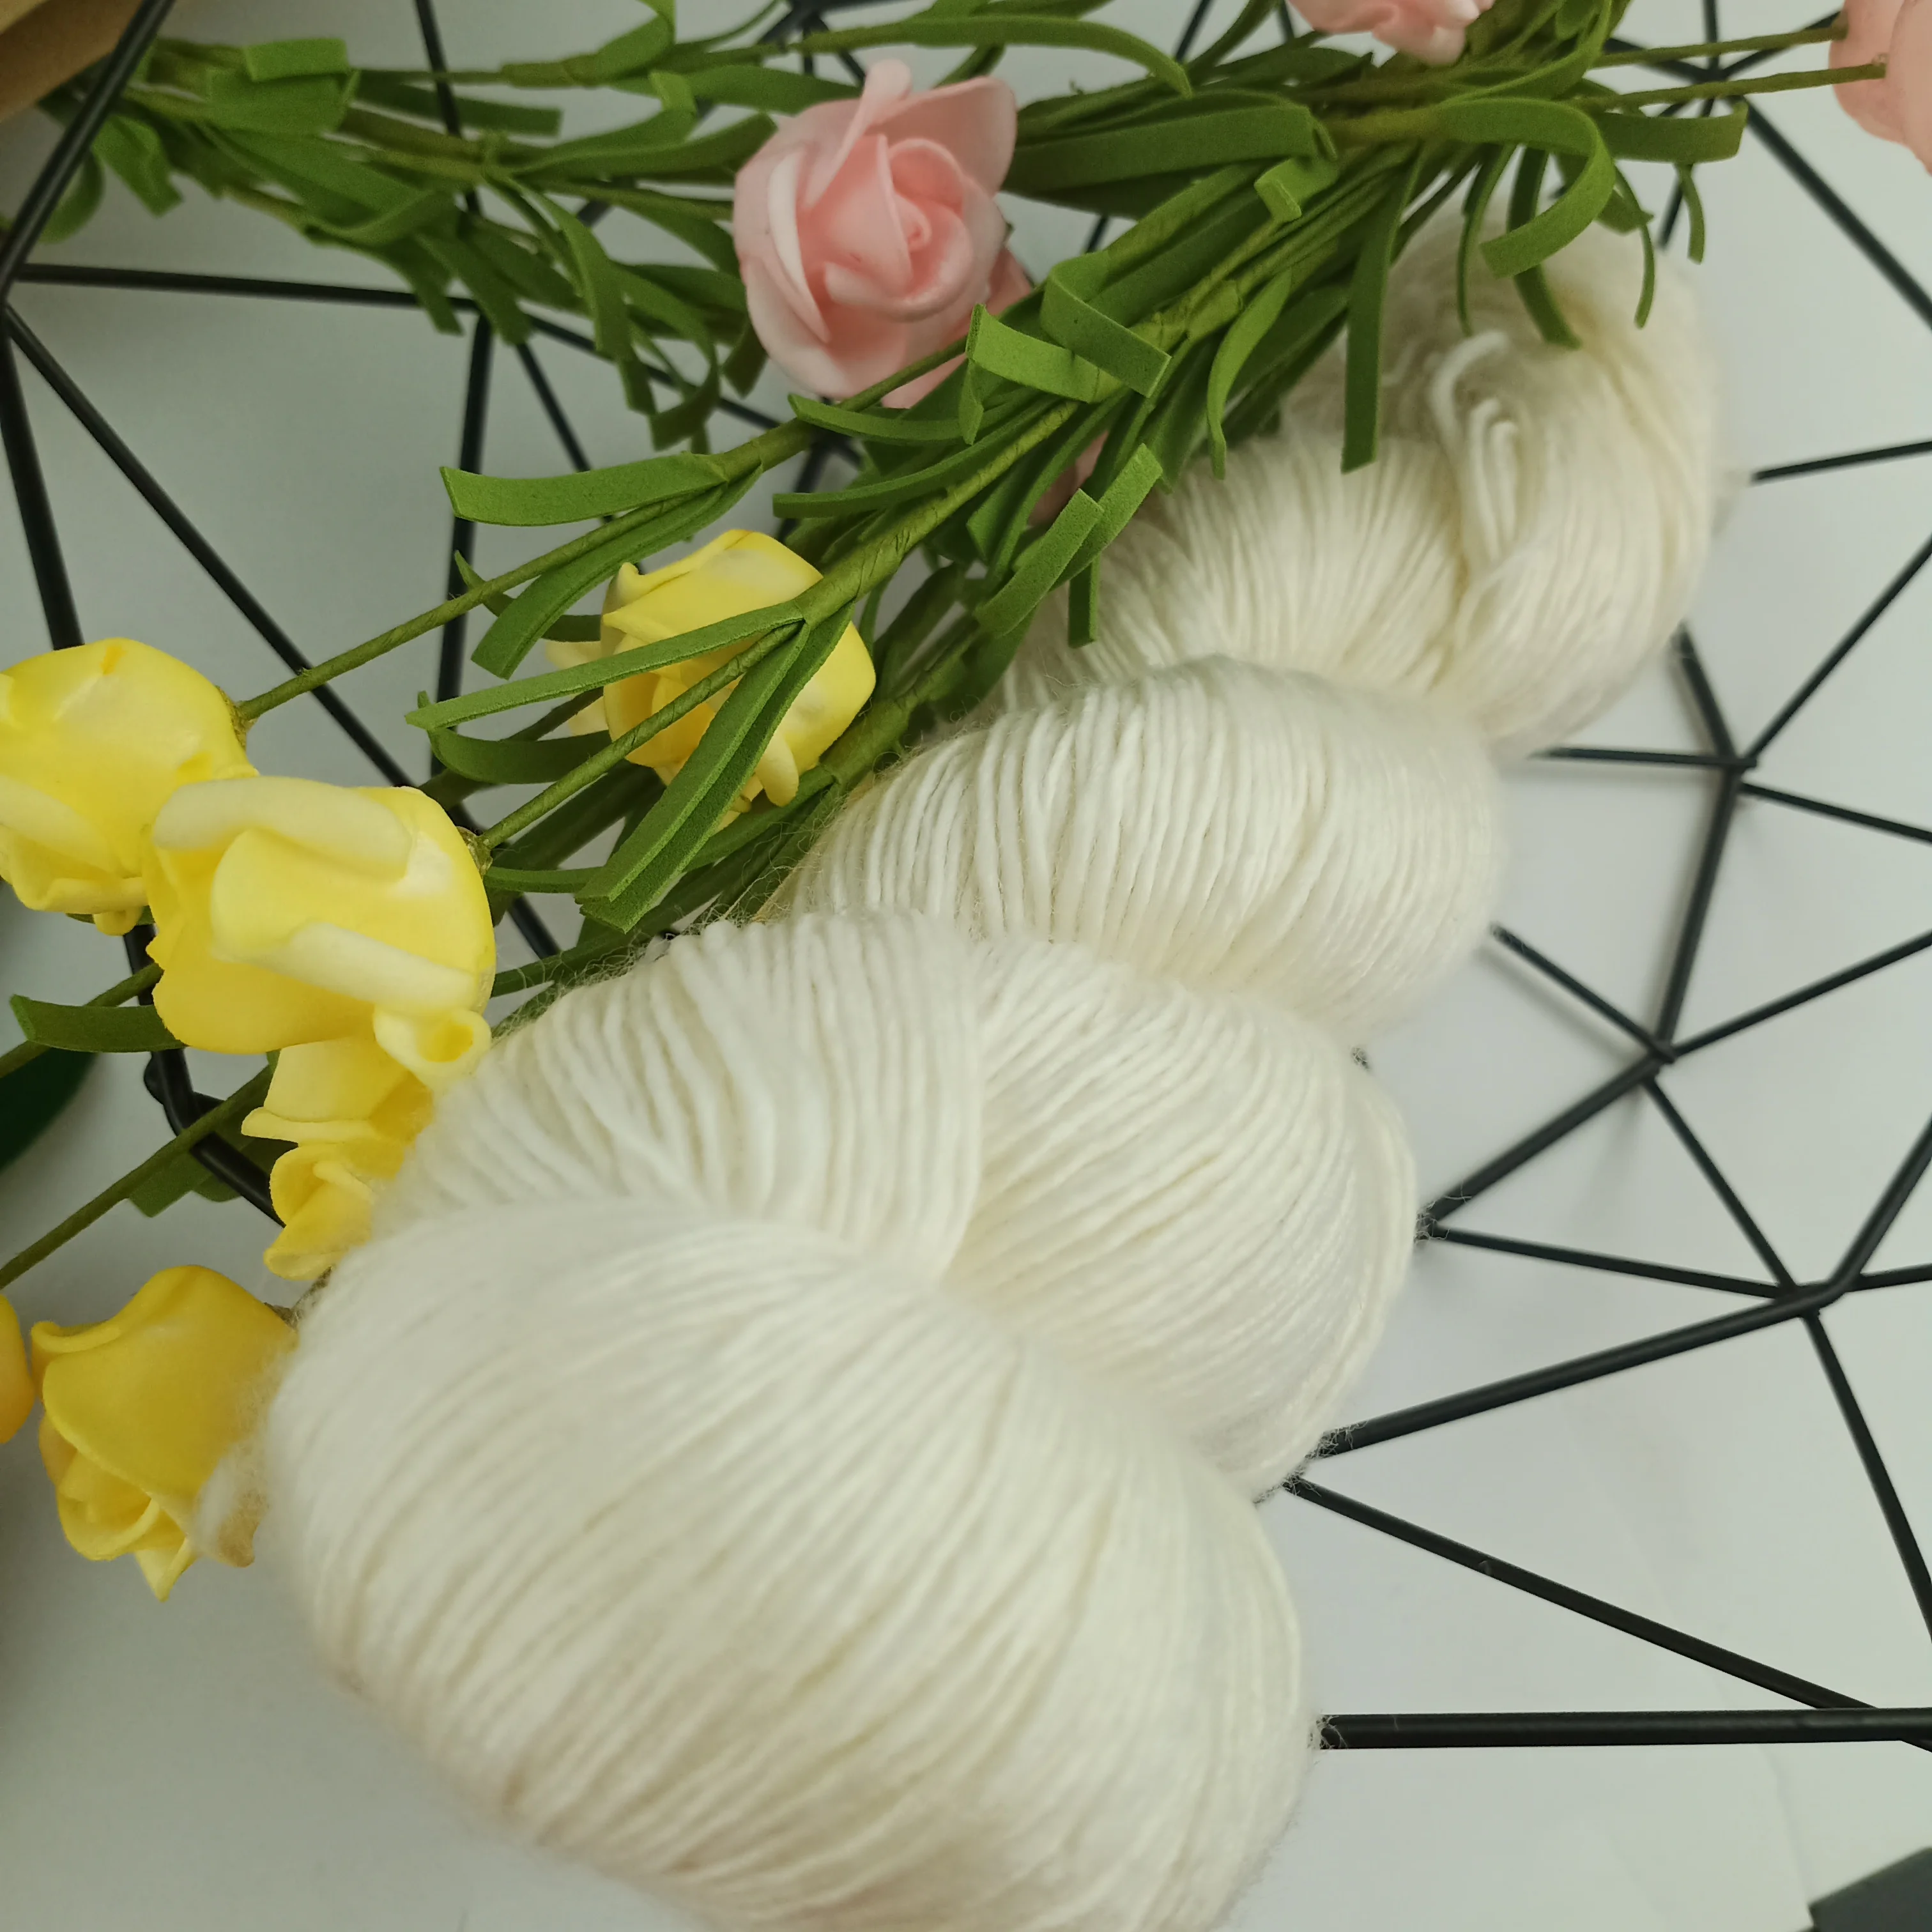 Пряжа Lotus Superwash Merino 1 слойная пряжа натуральная Роскошная длинная плюшевая шерсть мериносовое волокно Неокрашенная ручная вязка своими руками вязание крючком